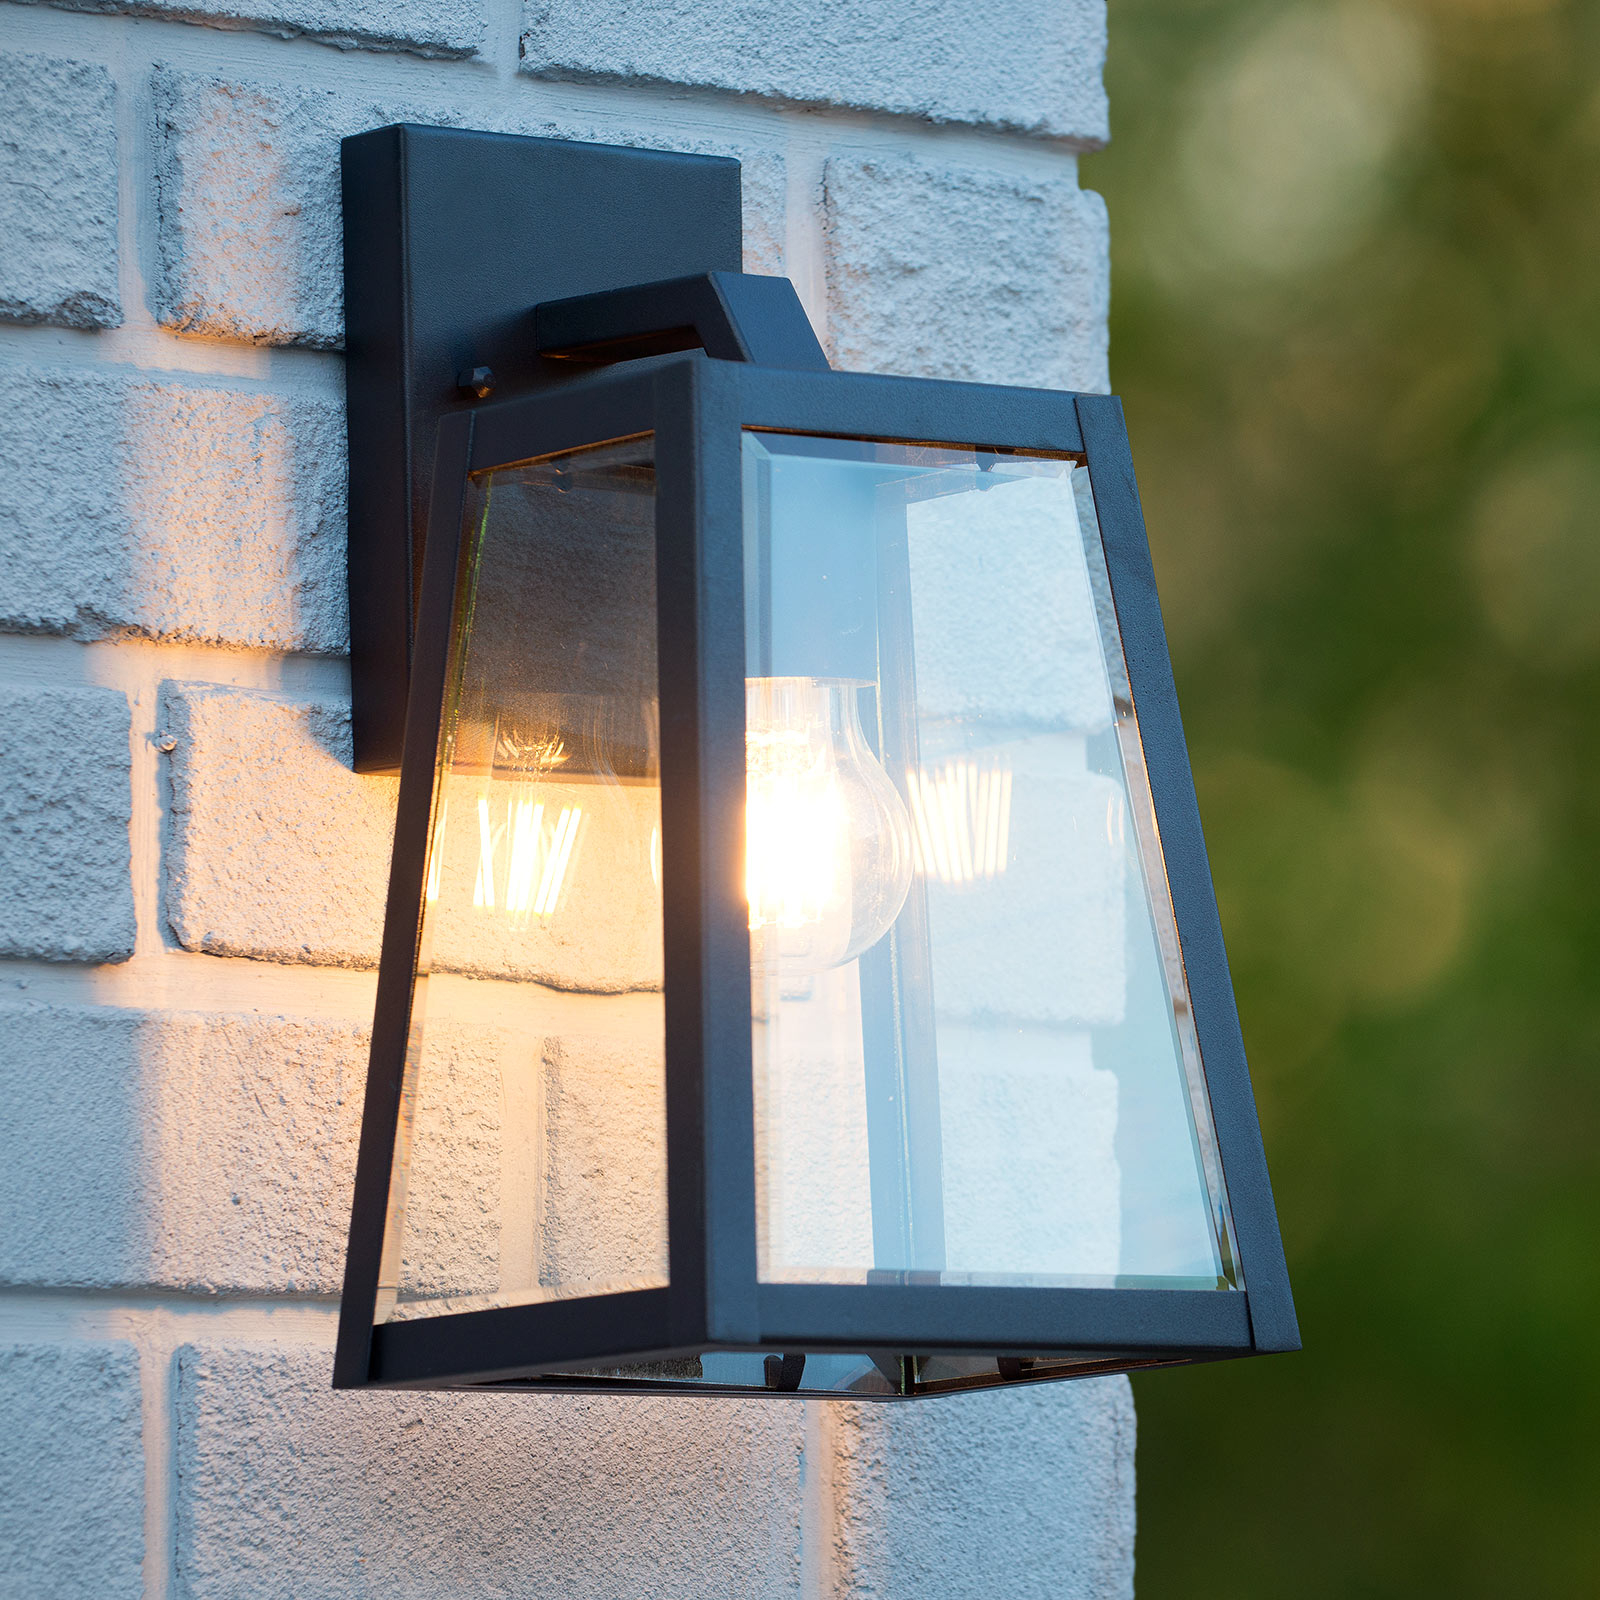 Matslot outdoor wall light, height 30.5 cm